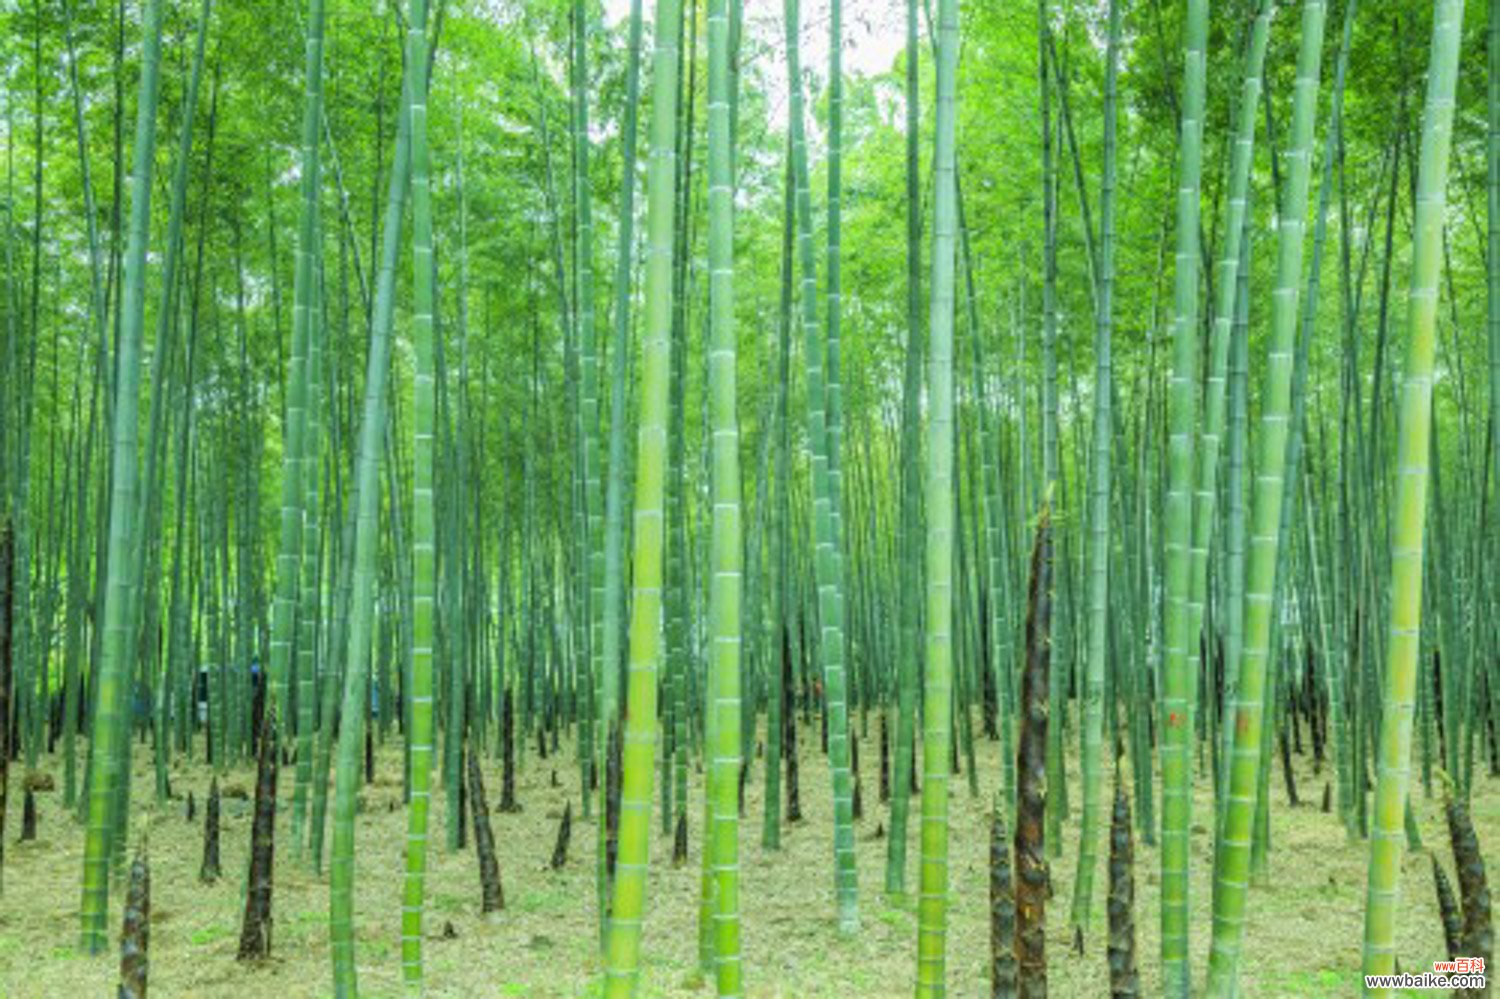 竹子有哪些应用价值